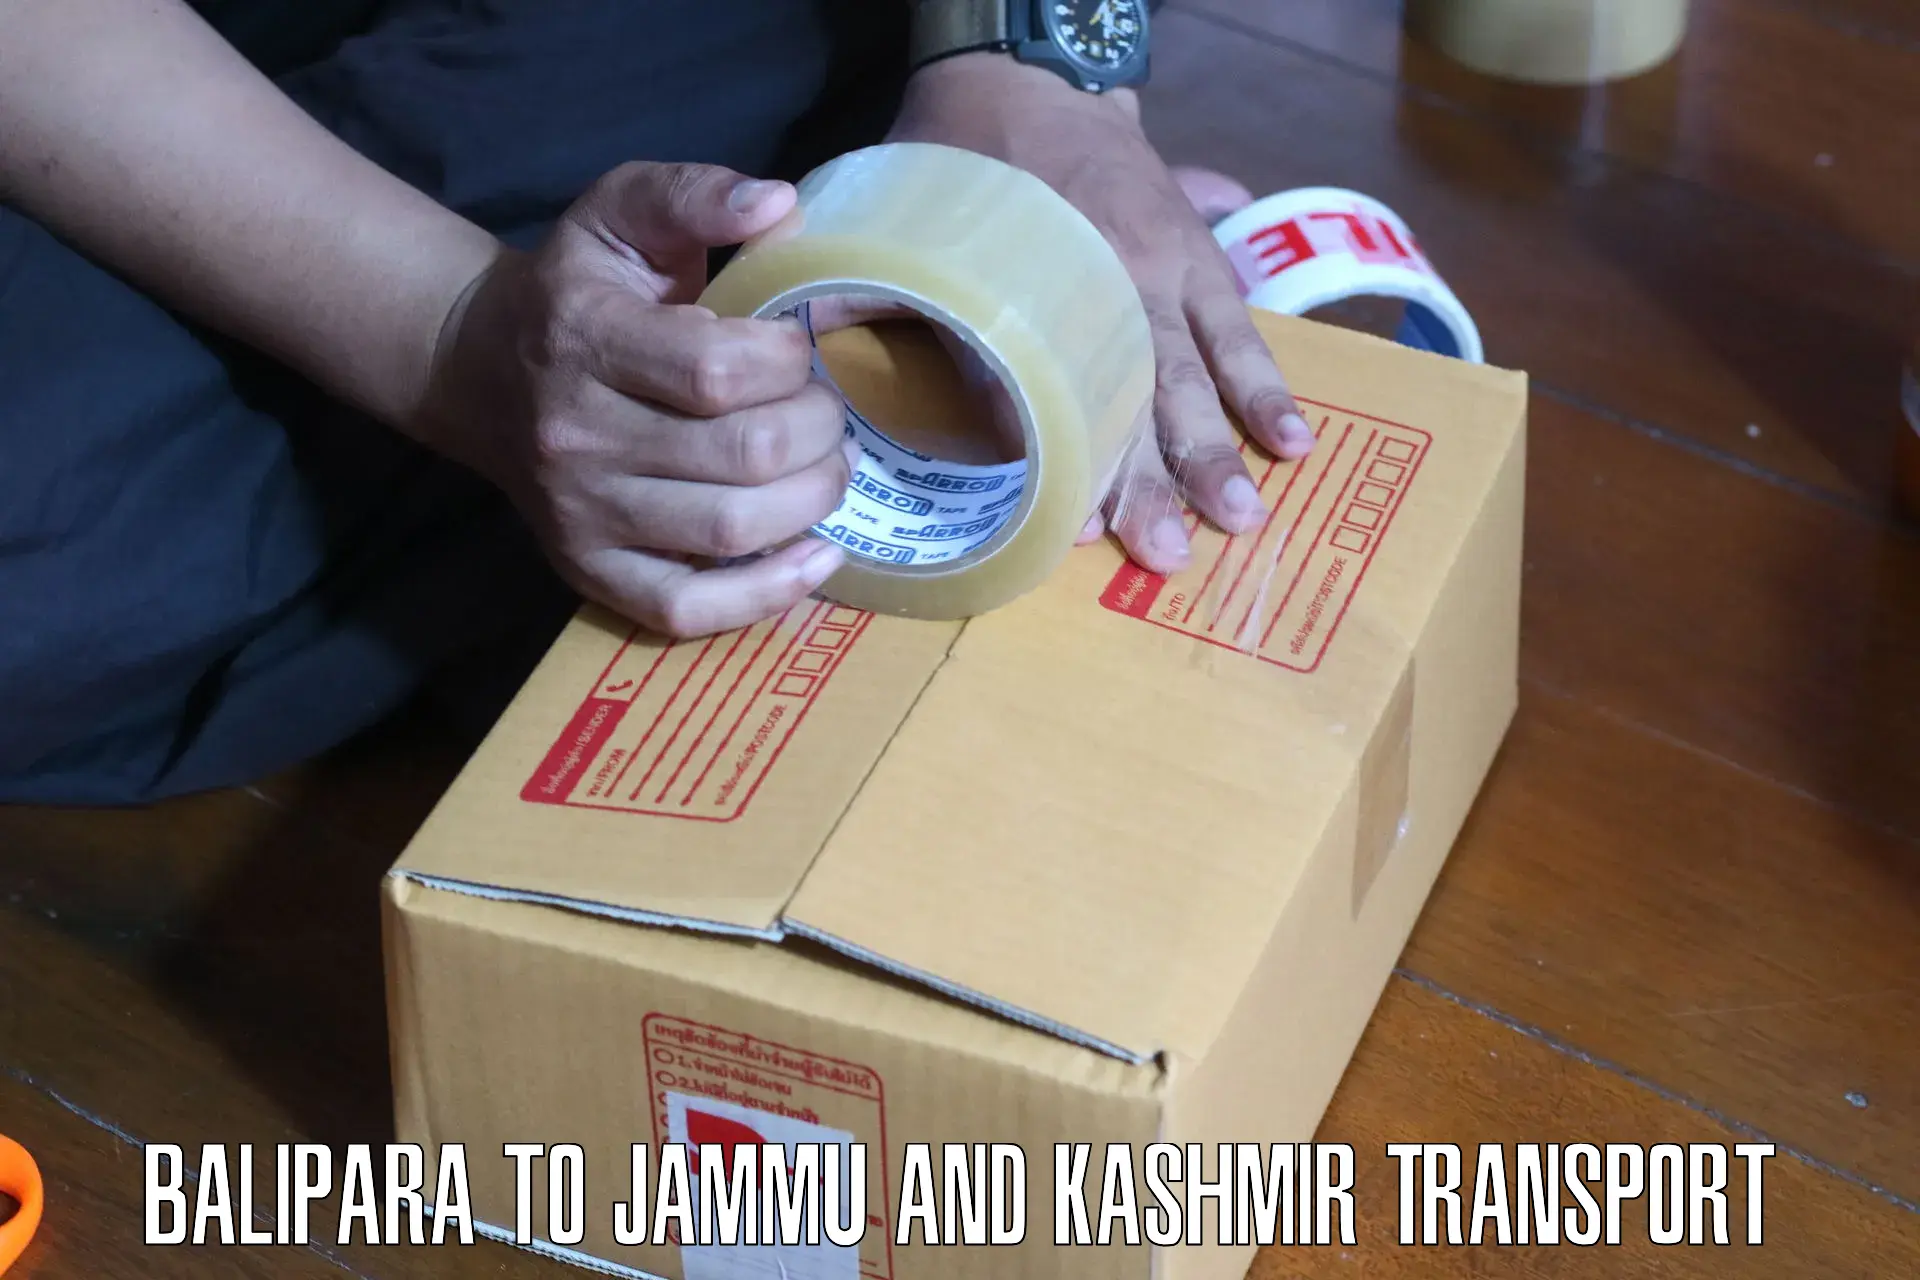 Transportation services Balipara to Jammu and Kashmir